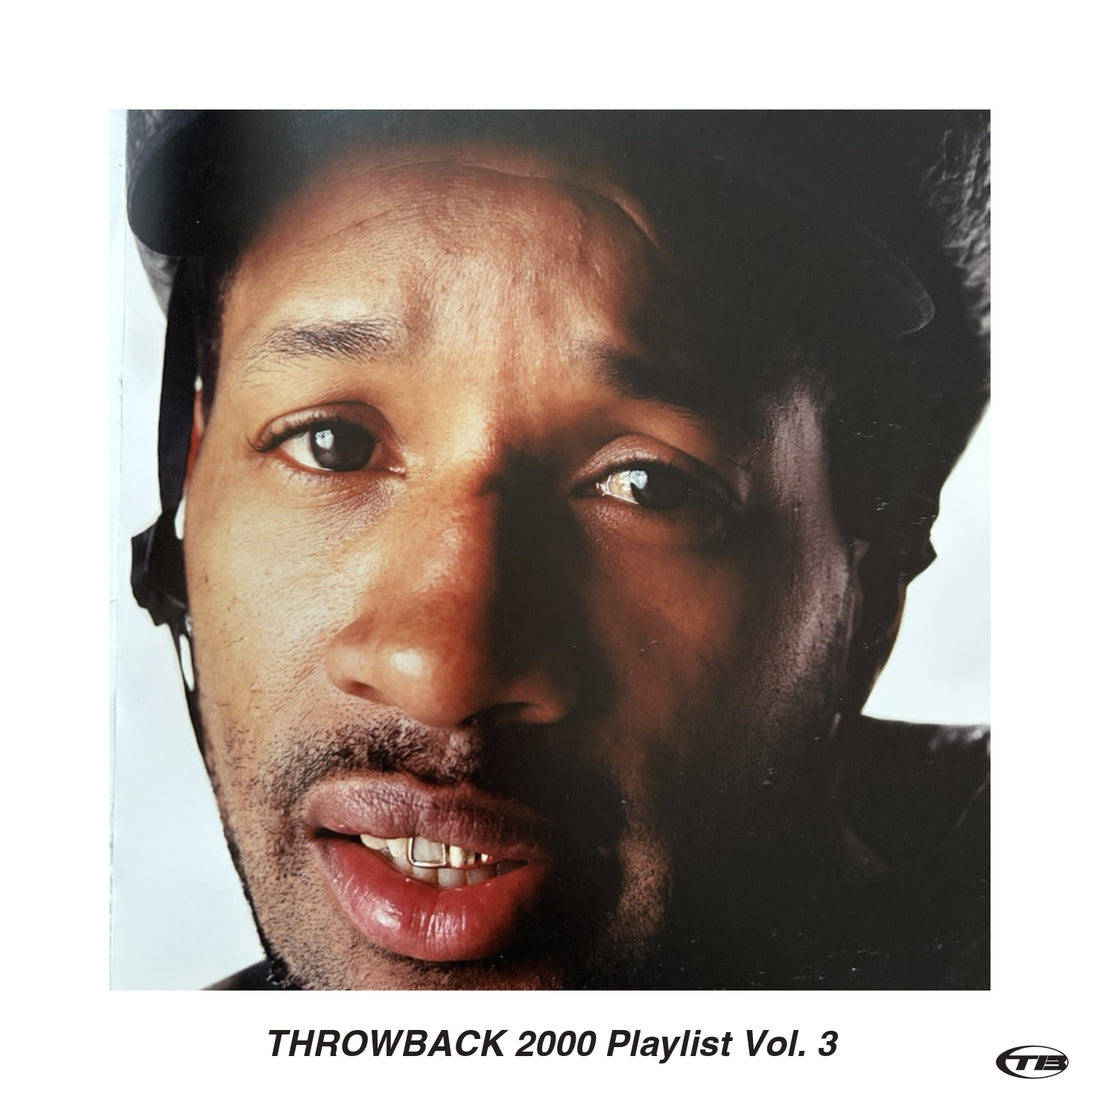 THROWBACK 2000 Playlist Vol. 3